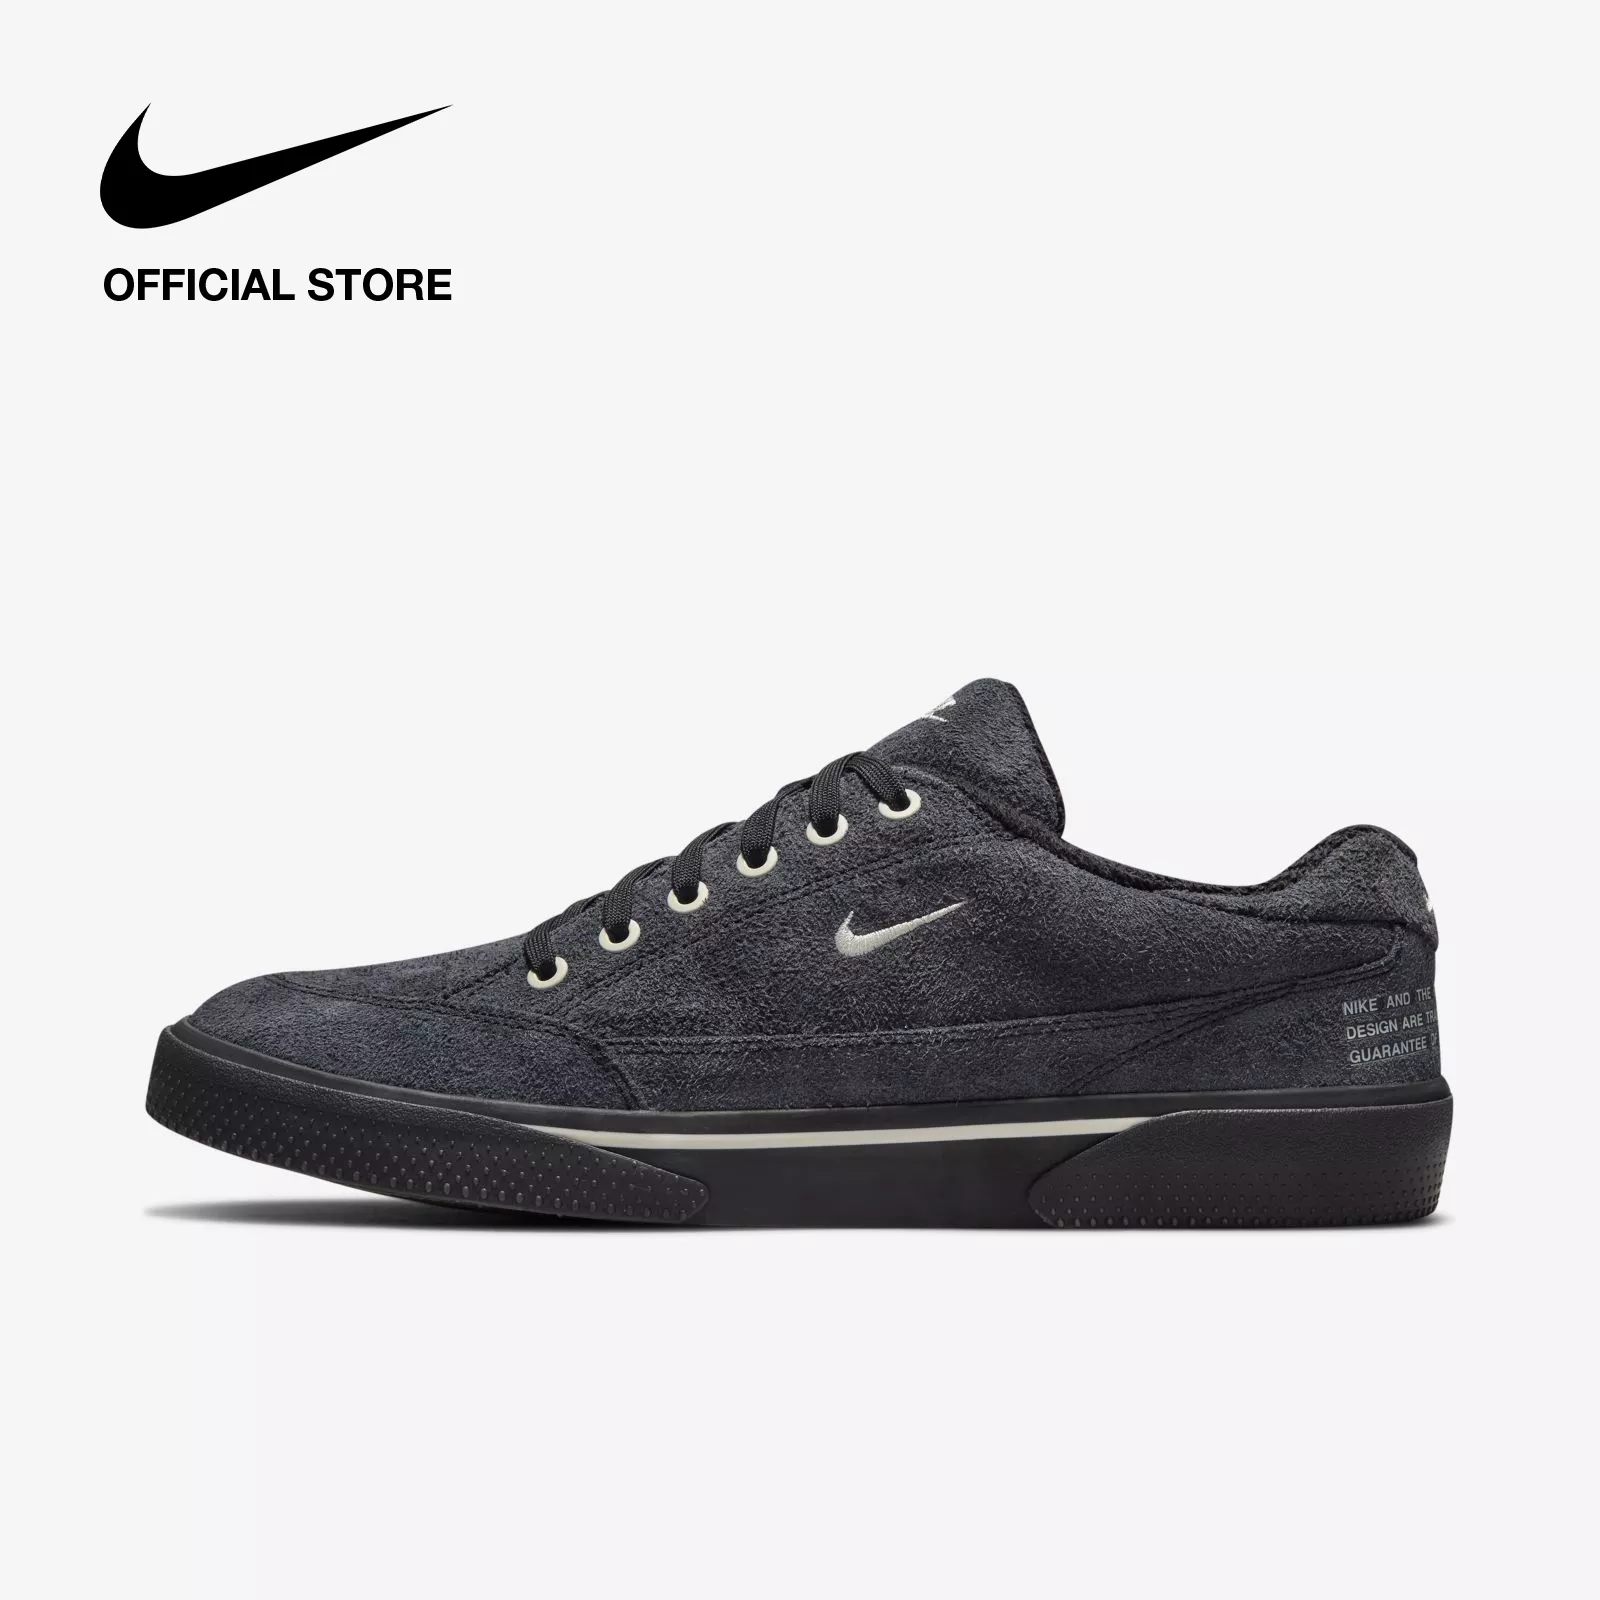 Nike Men's GTS 97 Shoes - Black รองเท้าผู้ชาย Nike GTS 97 - สีดำ